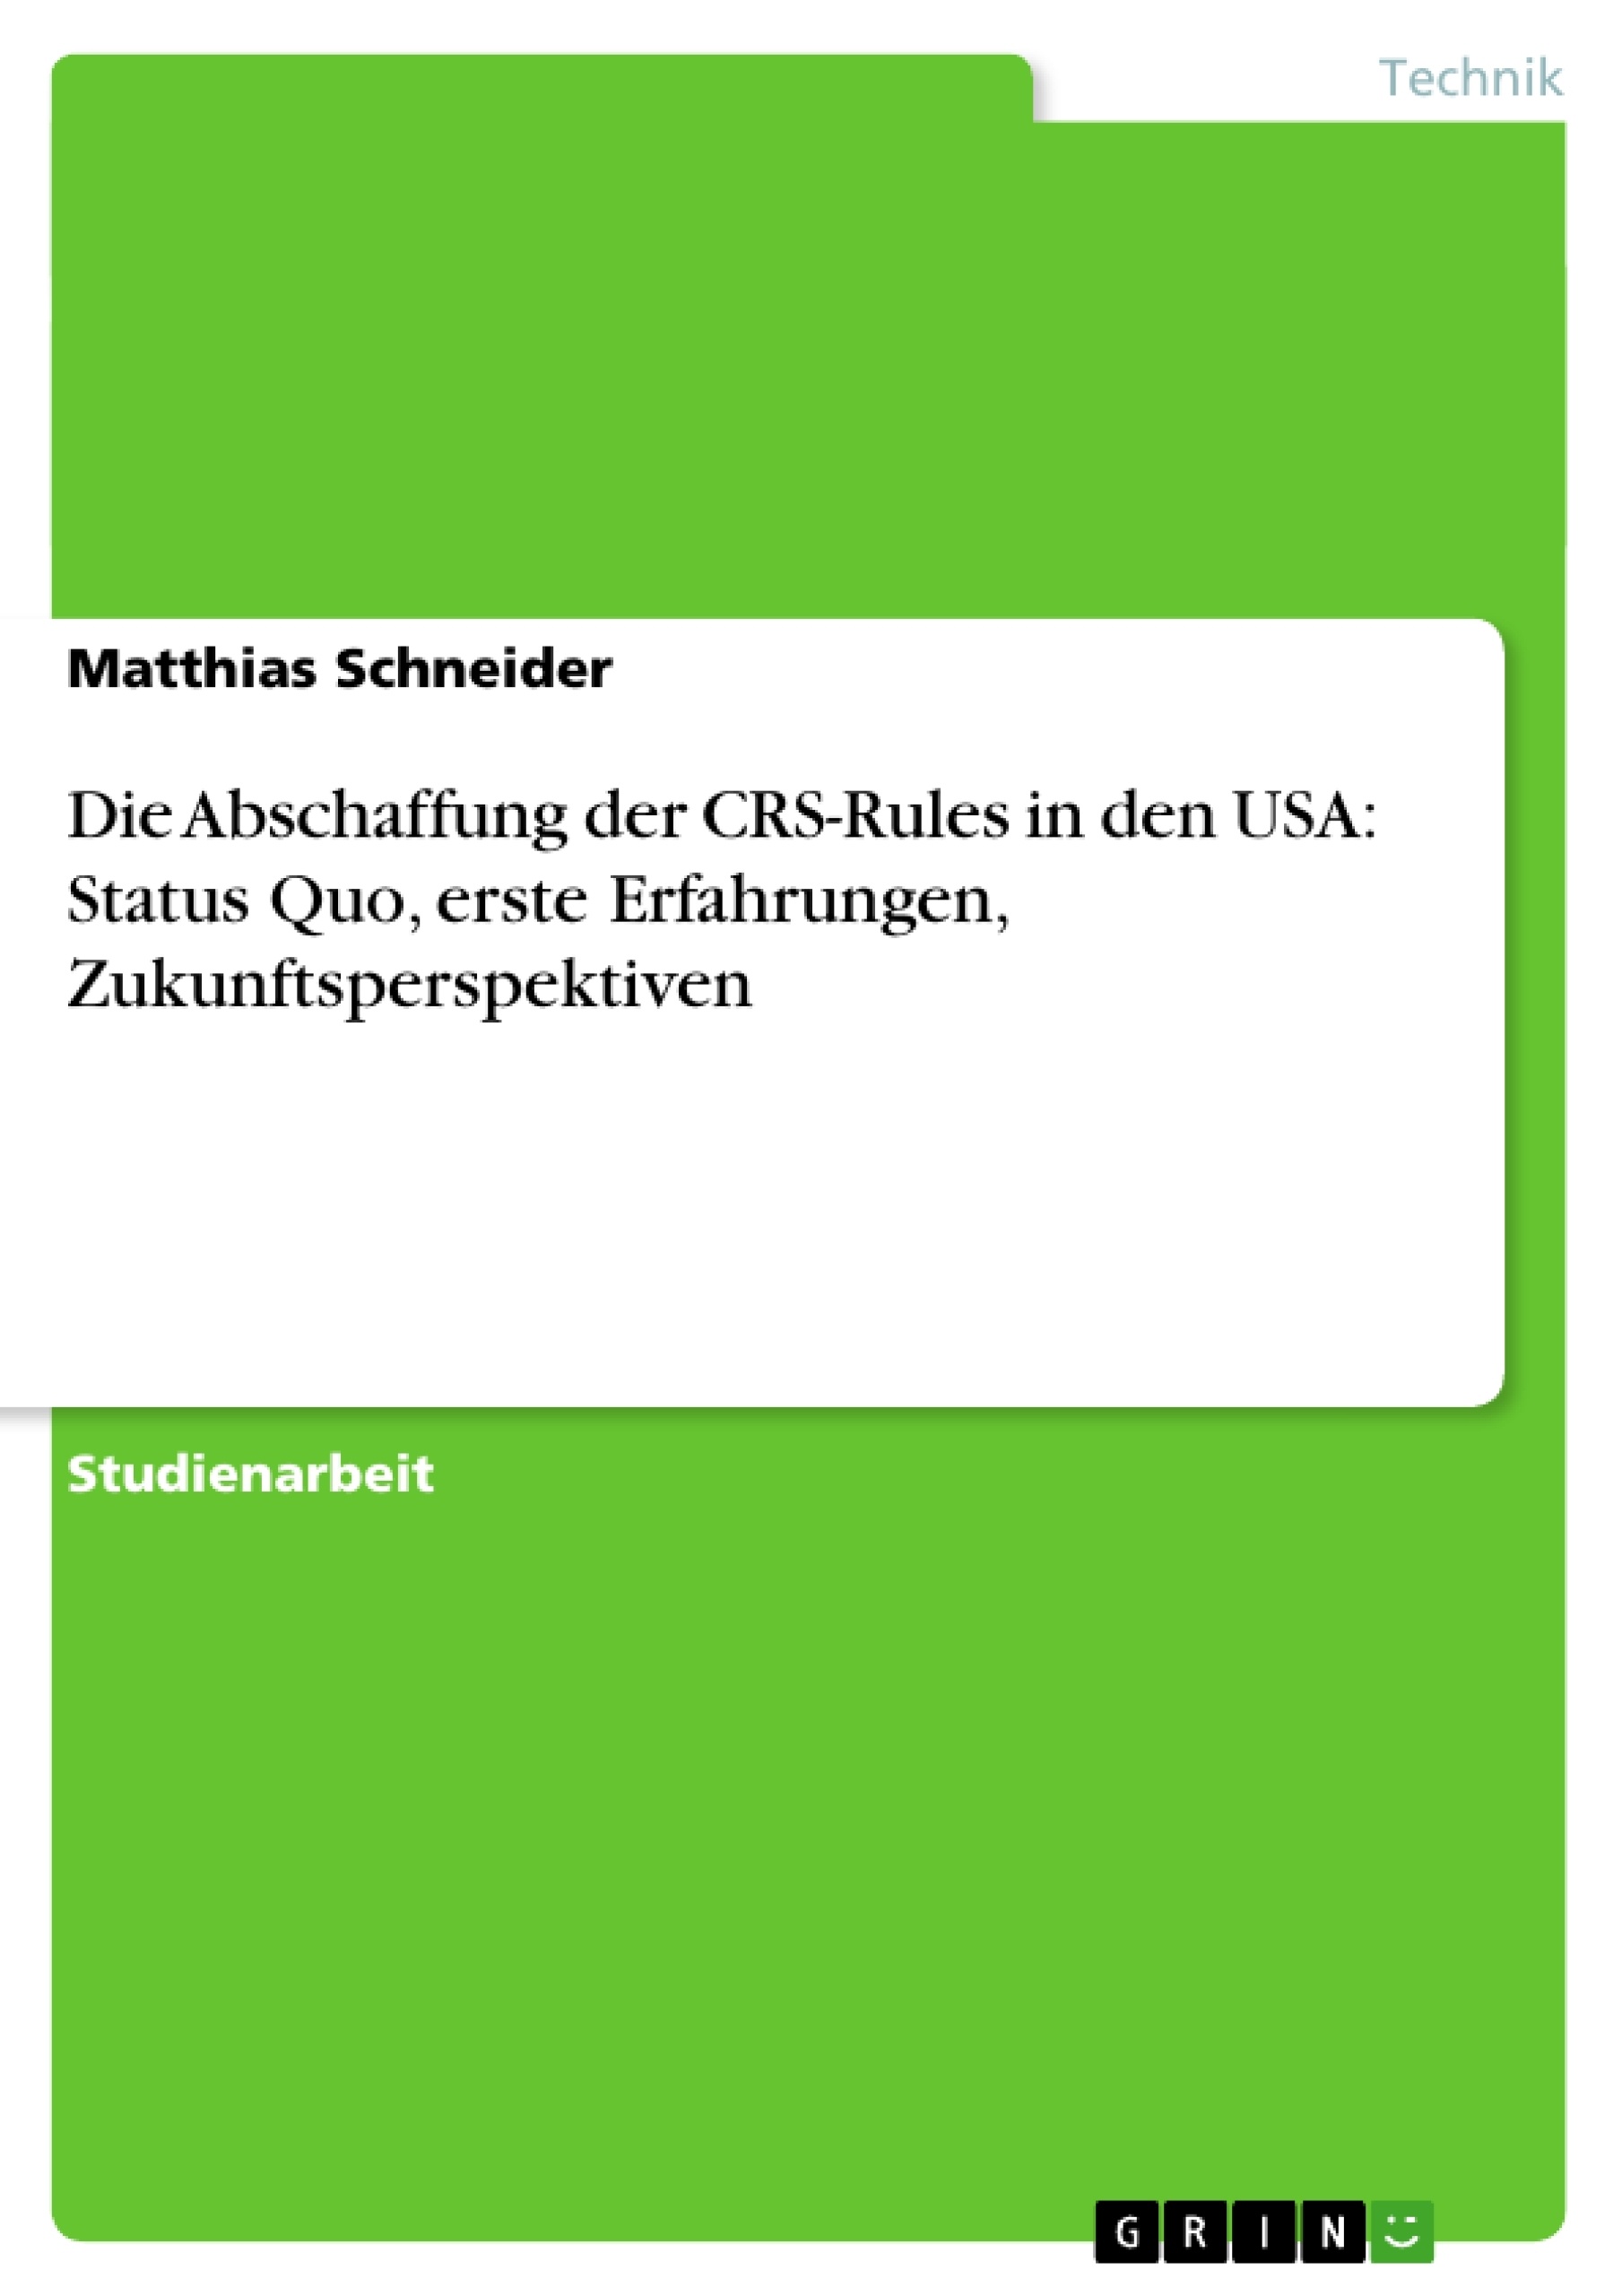 Title: Die Abschaffung der CRS-Rules in den USA: Status Quo, erste Erfahrungen, Zukunftsperspektiven